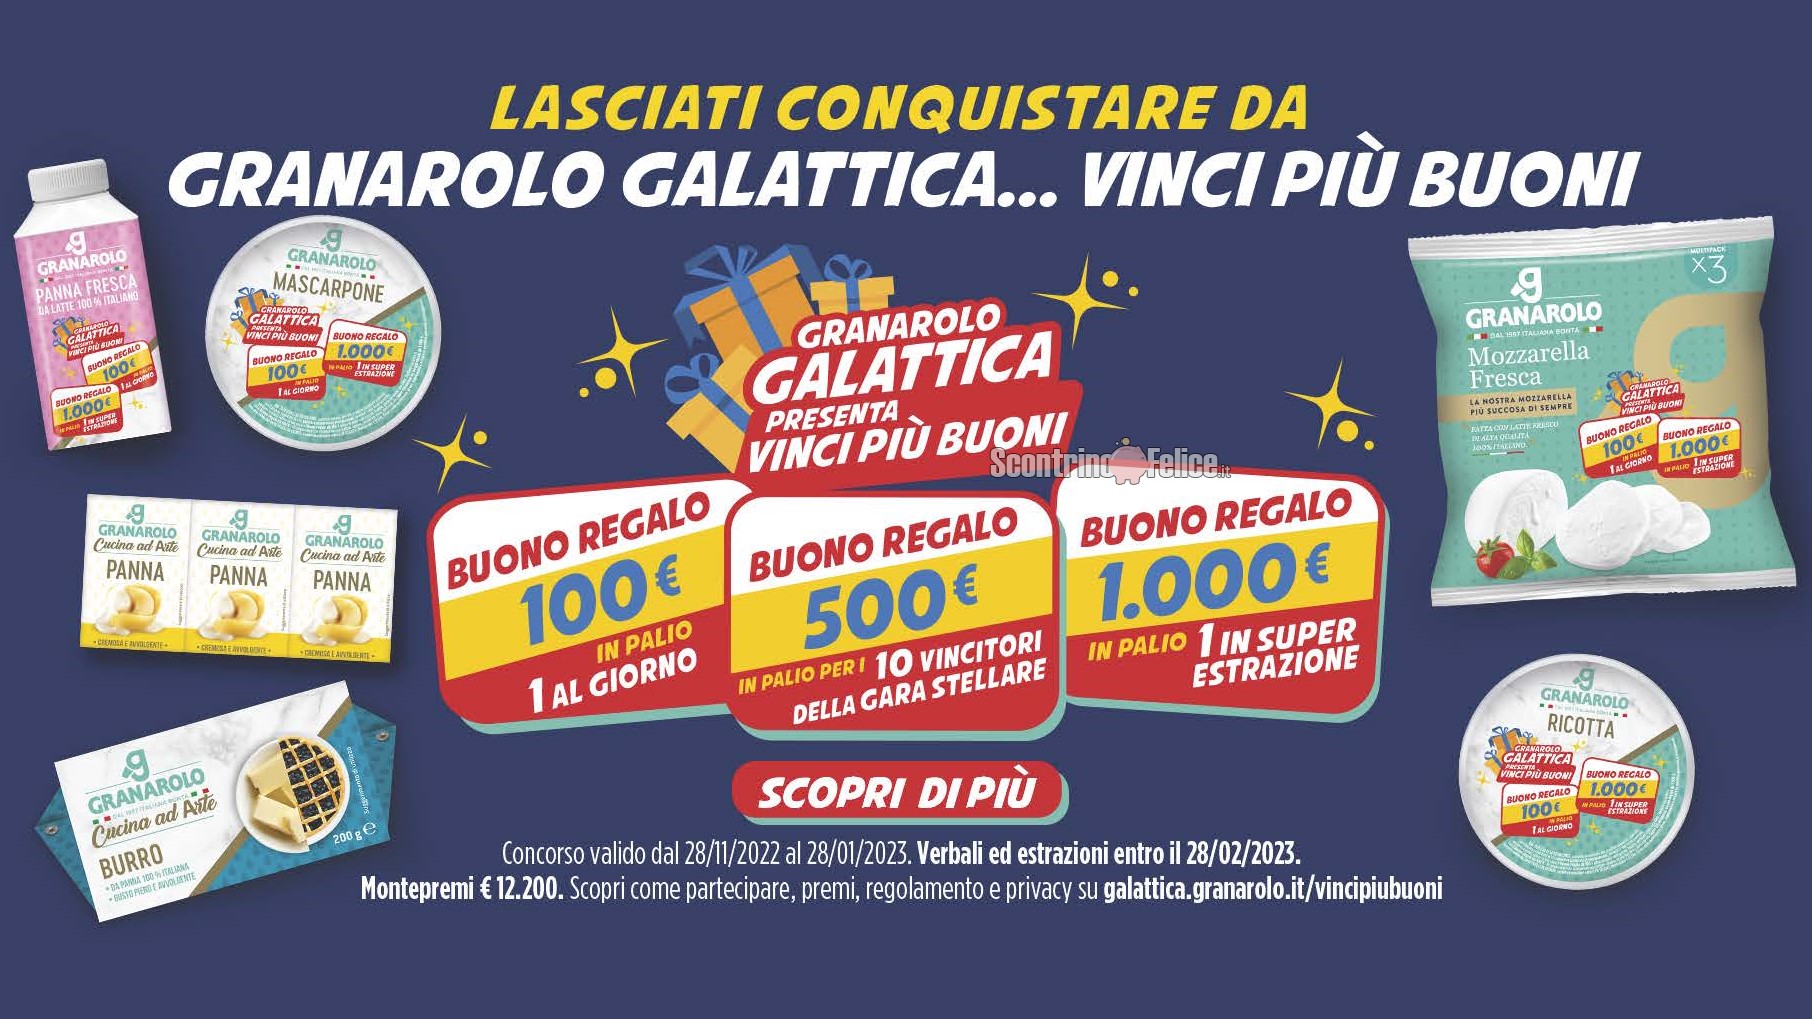 Concorso “Granarolo galattica vinci più buoni”: in palio Buoni da 100, 500 e 1000 euro!